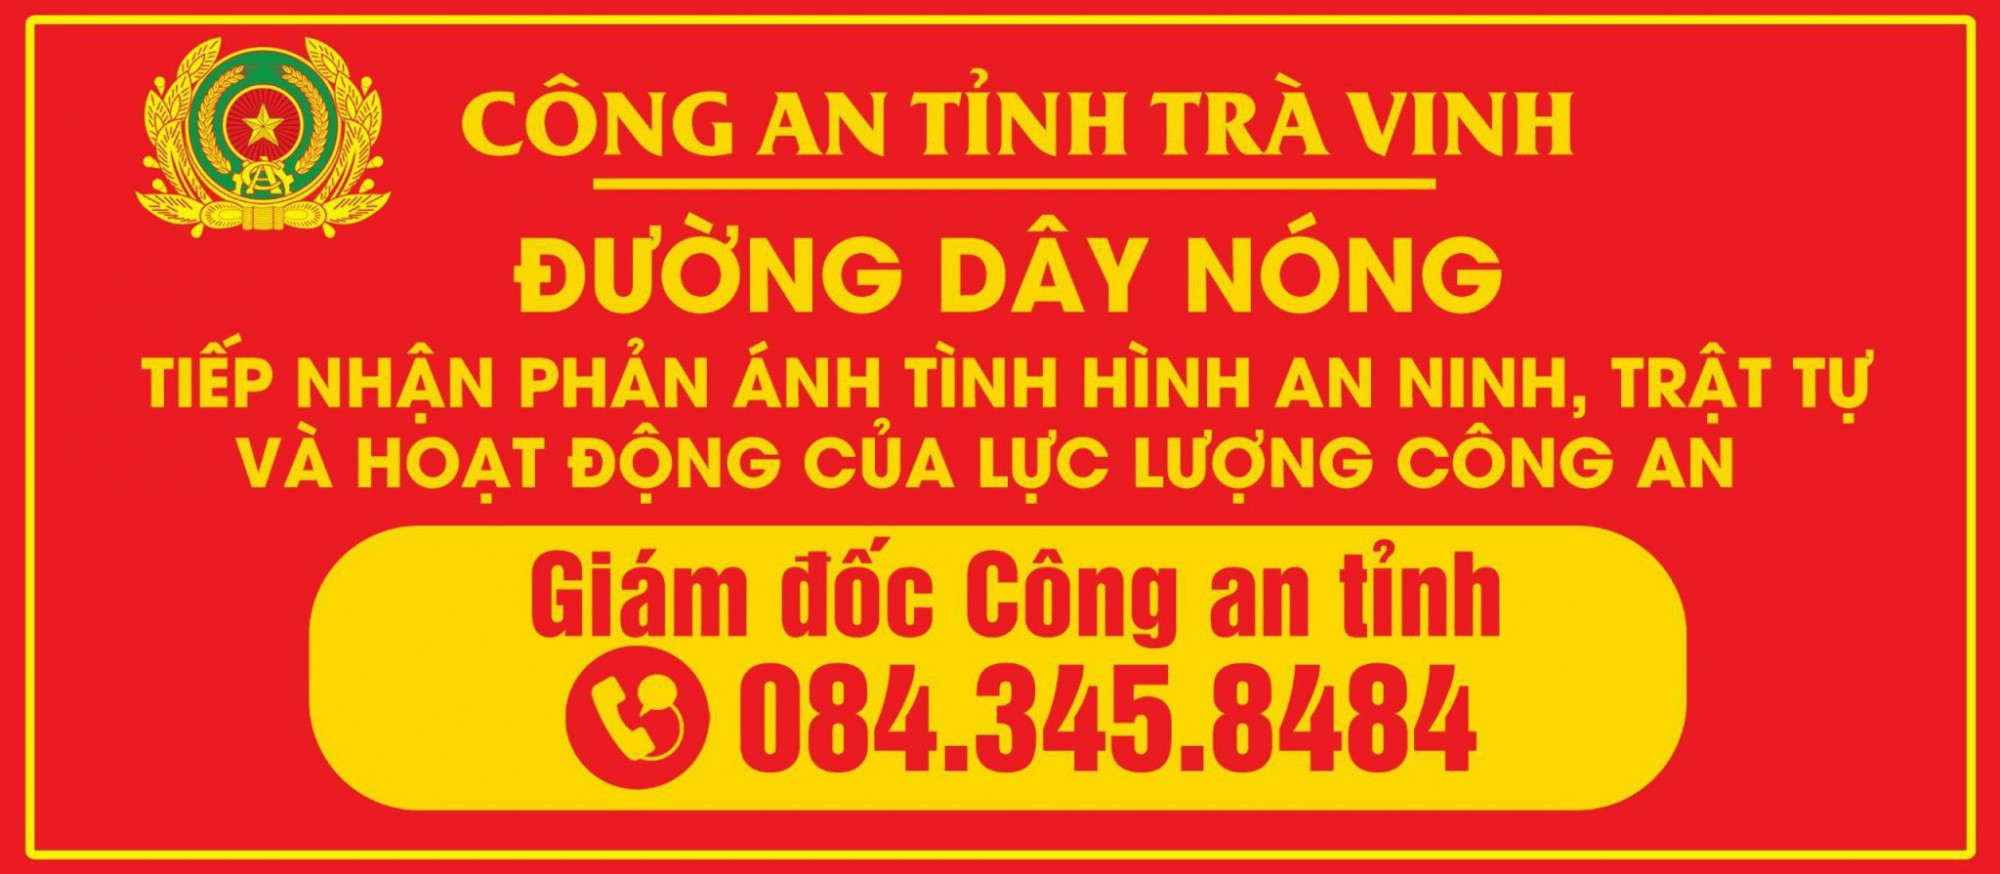 Số điện thoại đường dây nóng của đại tá Trần Xuân Ánh - Giám đốc Công an tỉnh Trà Vinh